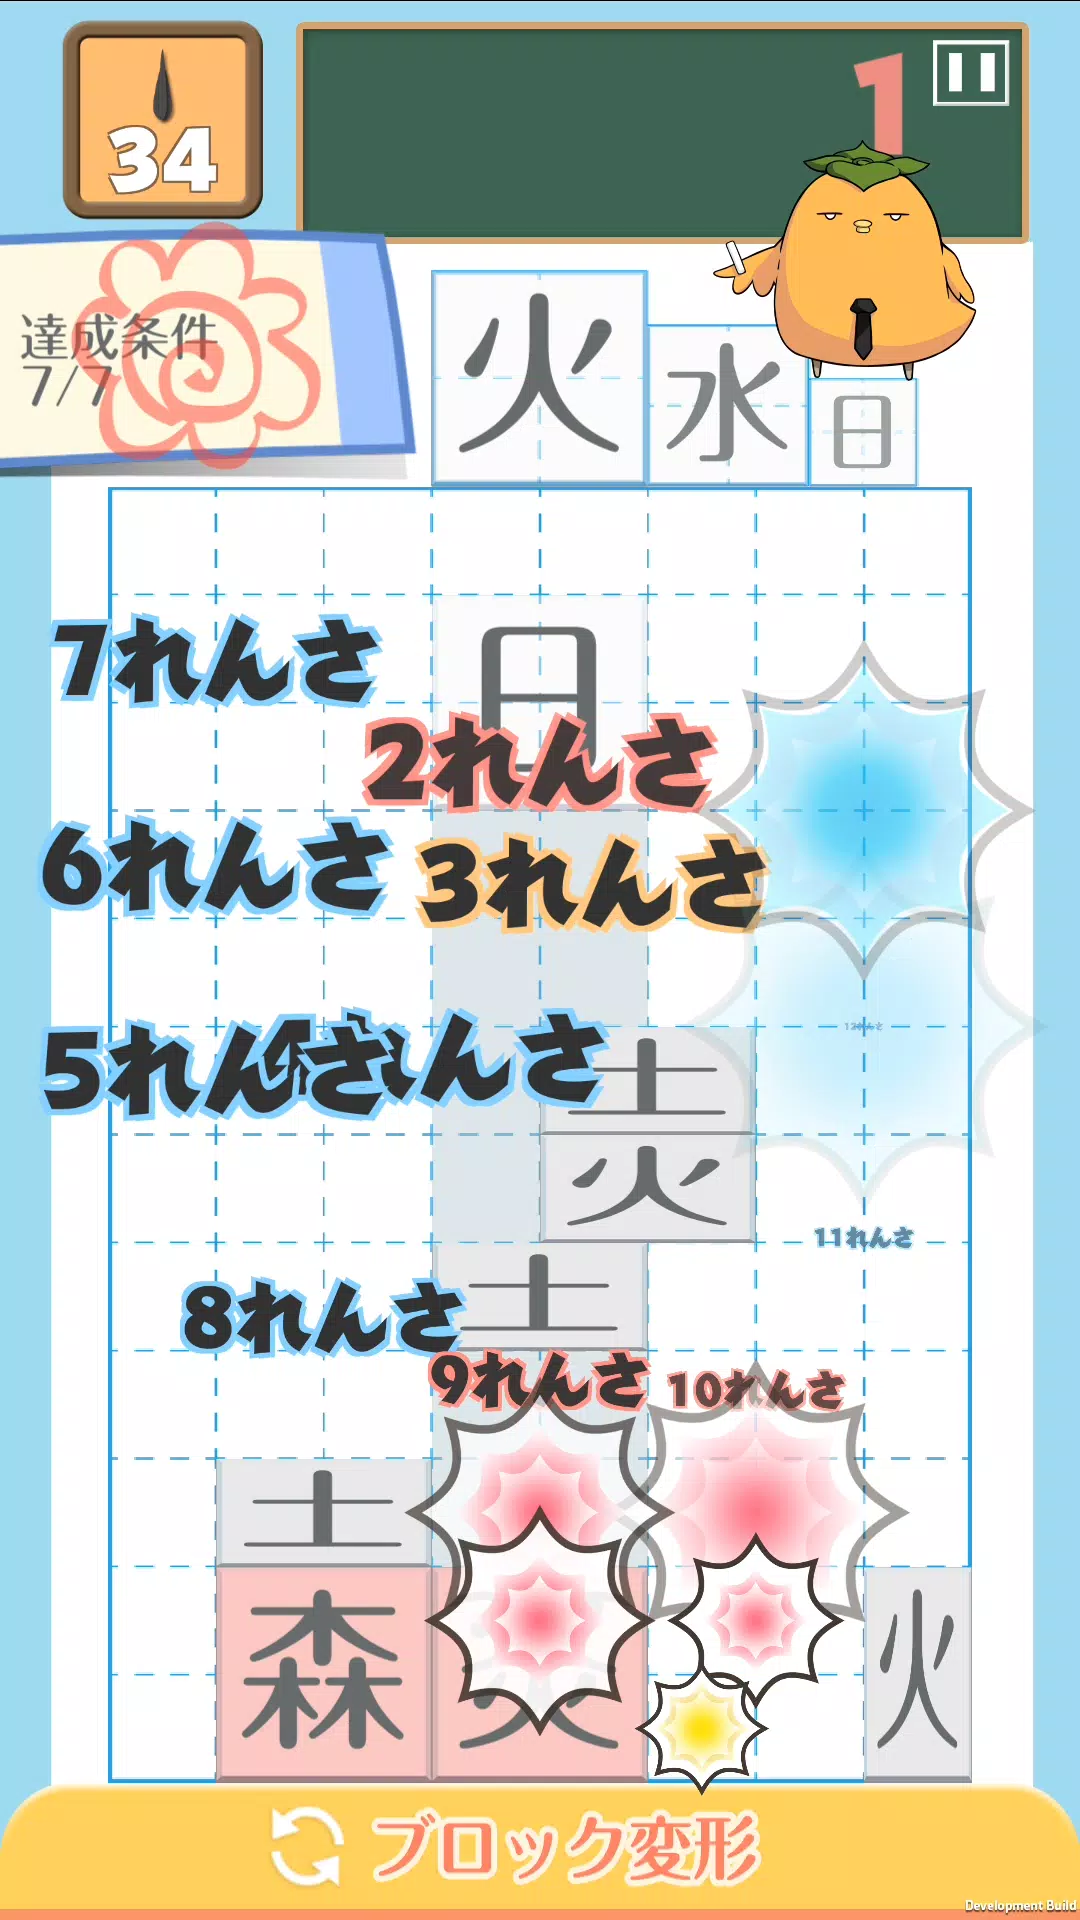 テト字ス 落ちもの漢字パズルゲーム For Android Apk Download